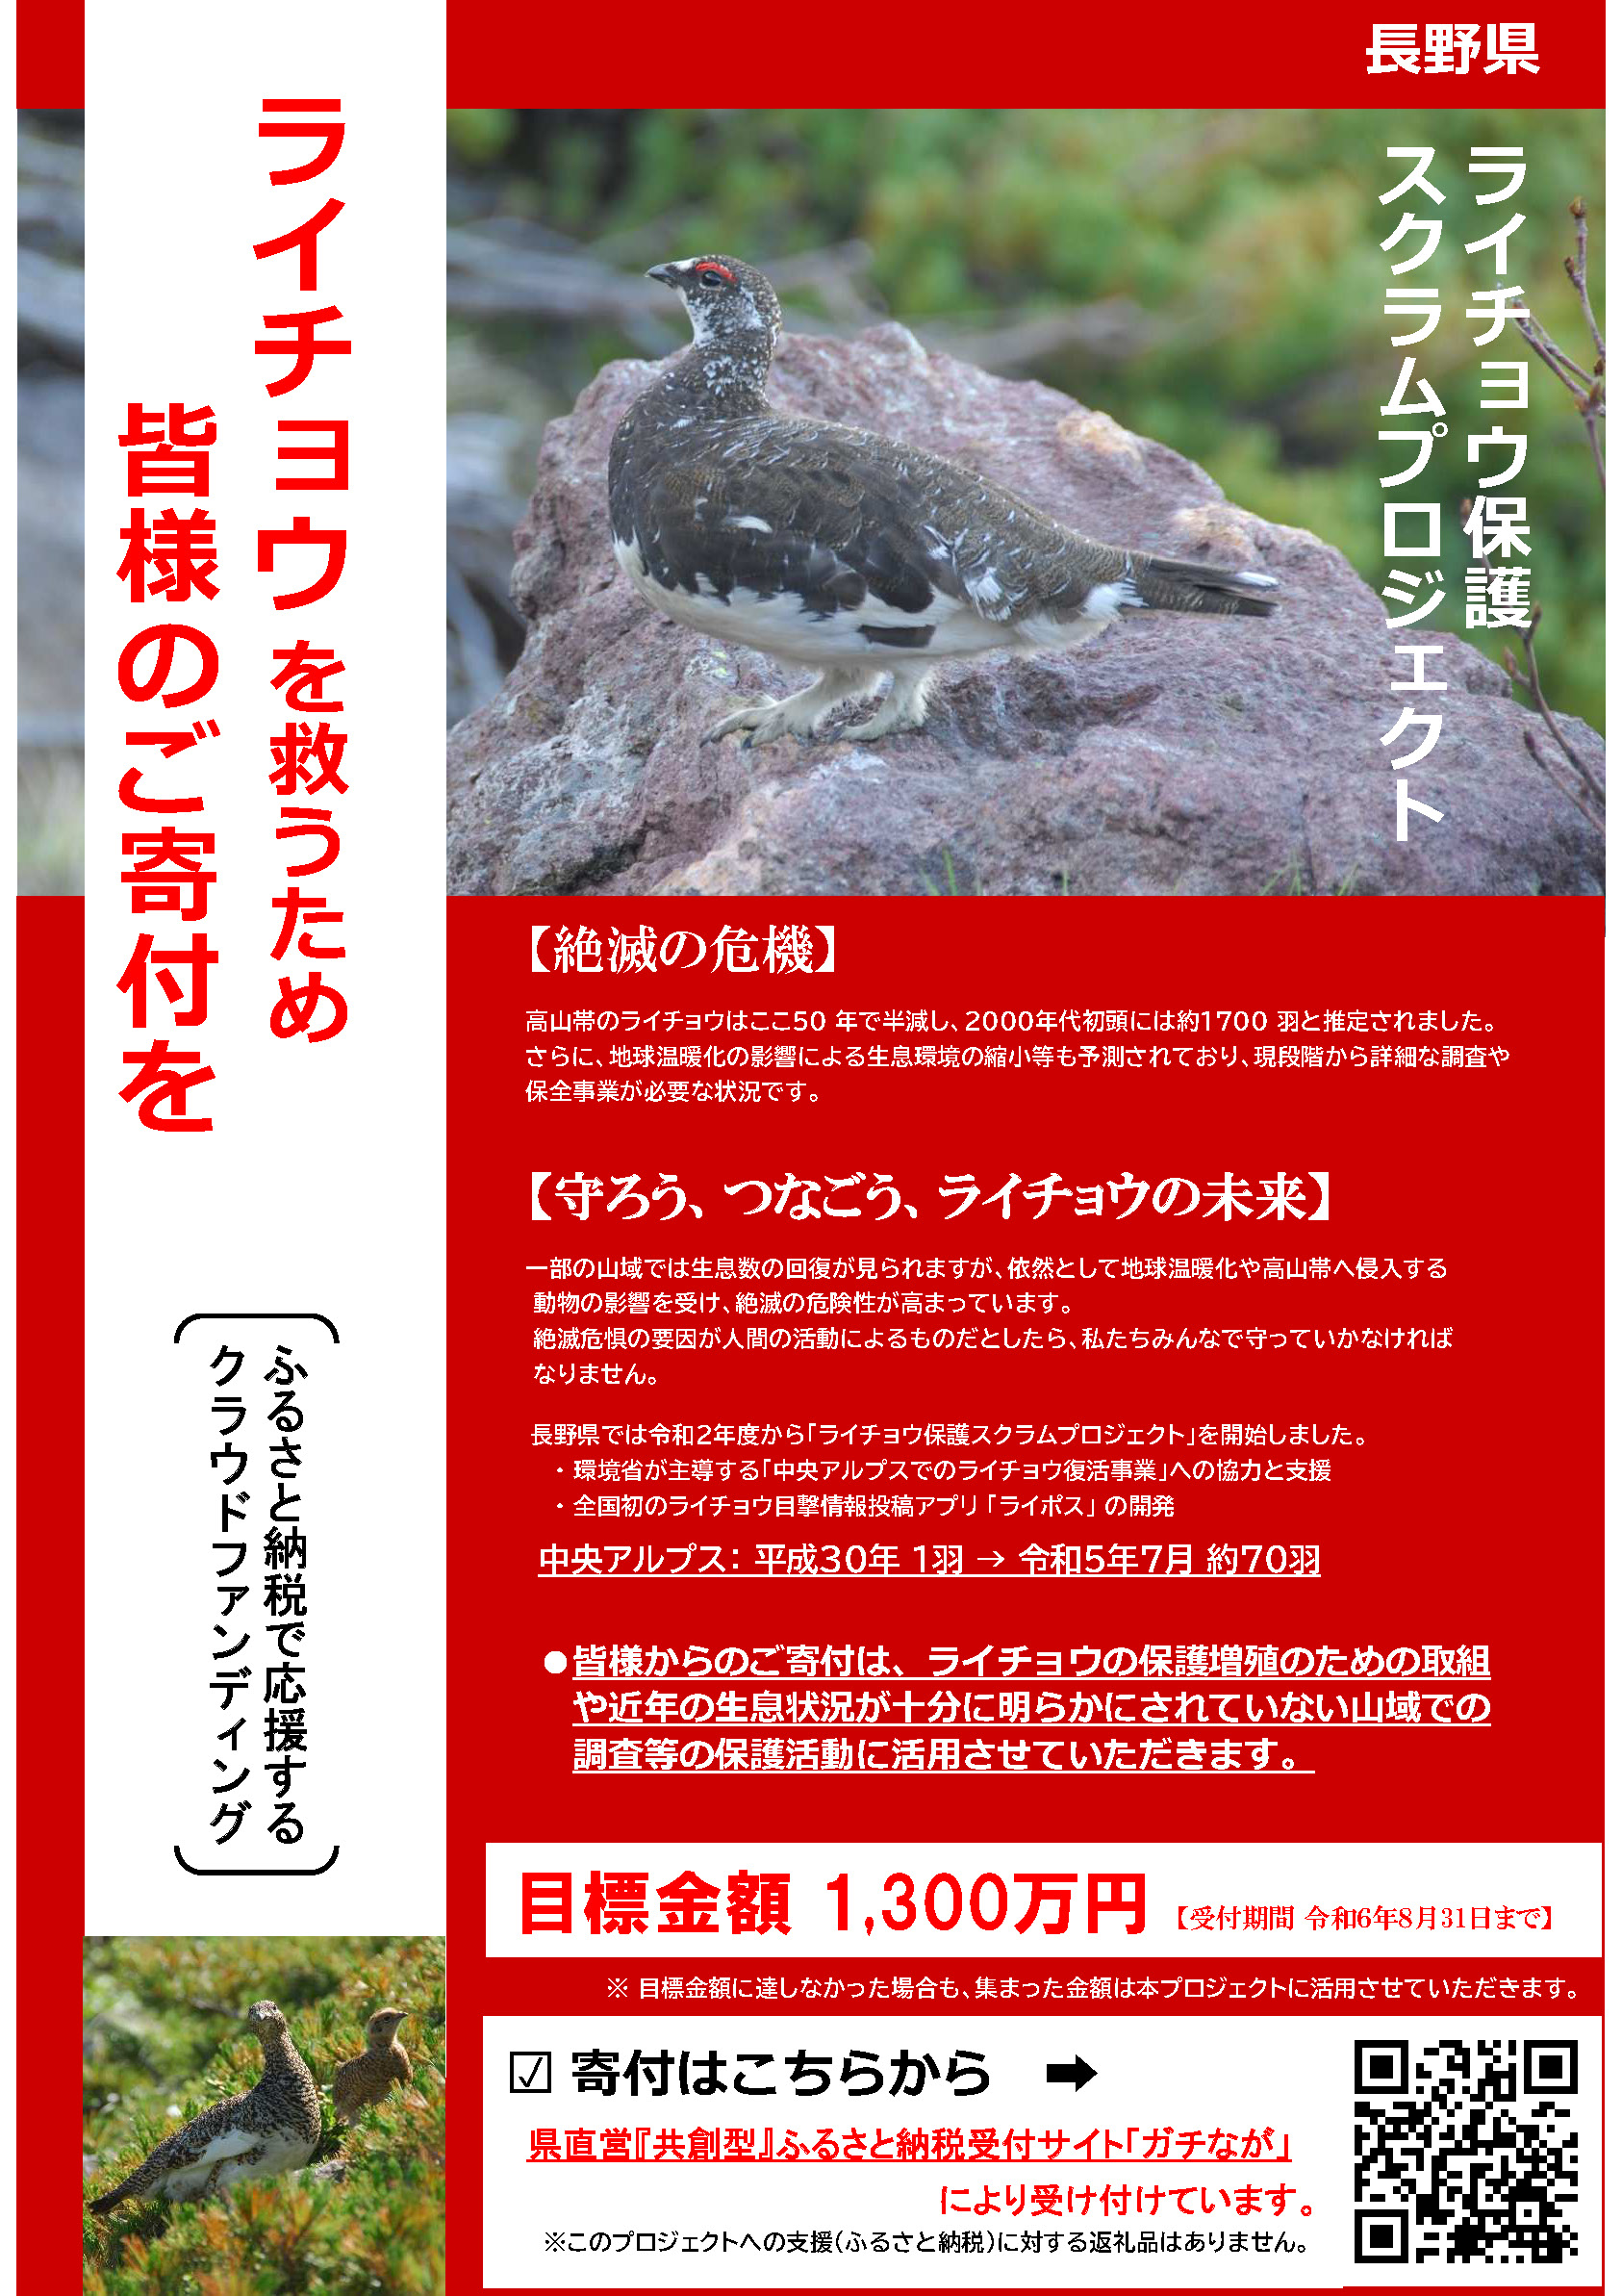 長野県ライチョウ保護スクラムプロジェクト